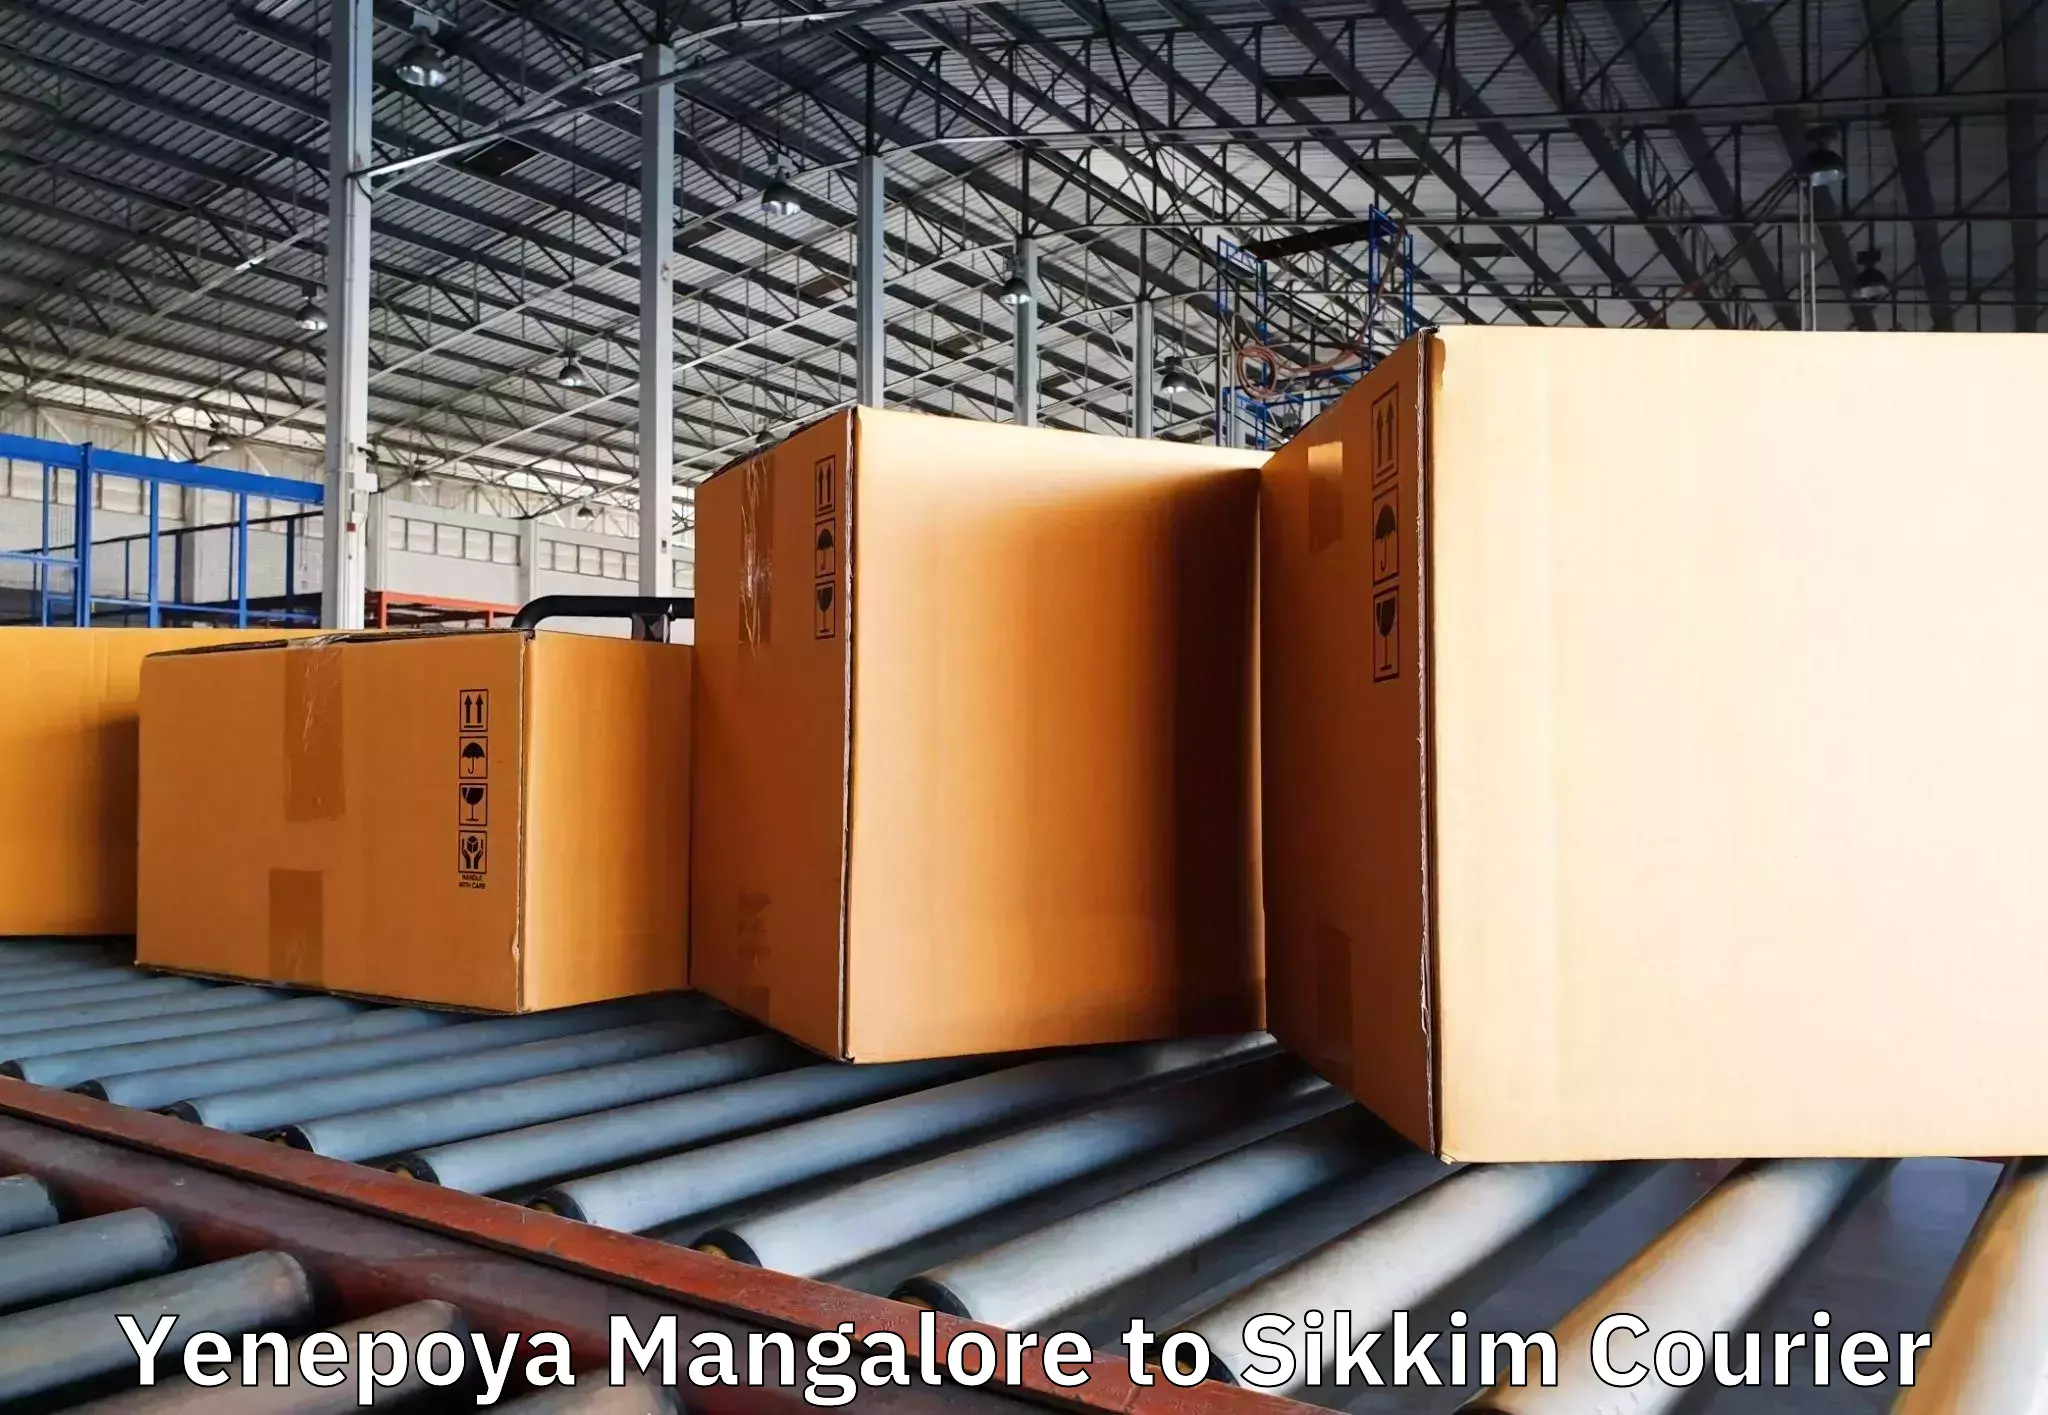 Professional movers and packers Yenepoya Mangalore to Namchi